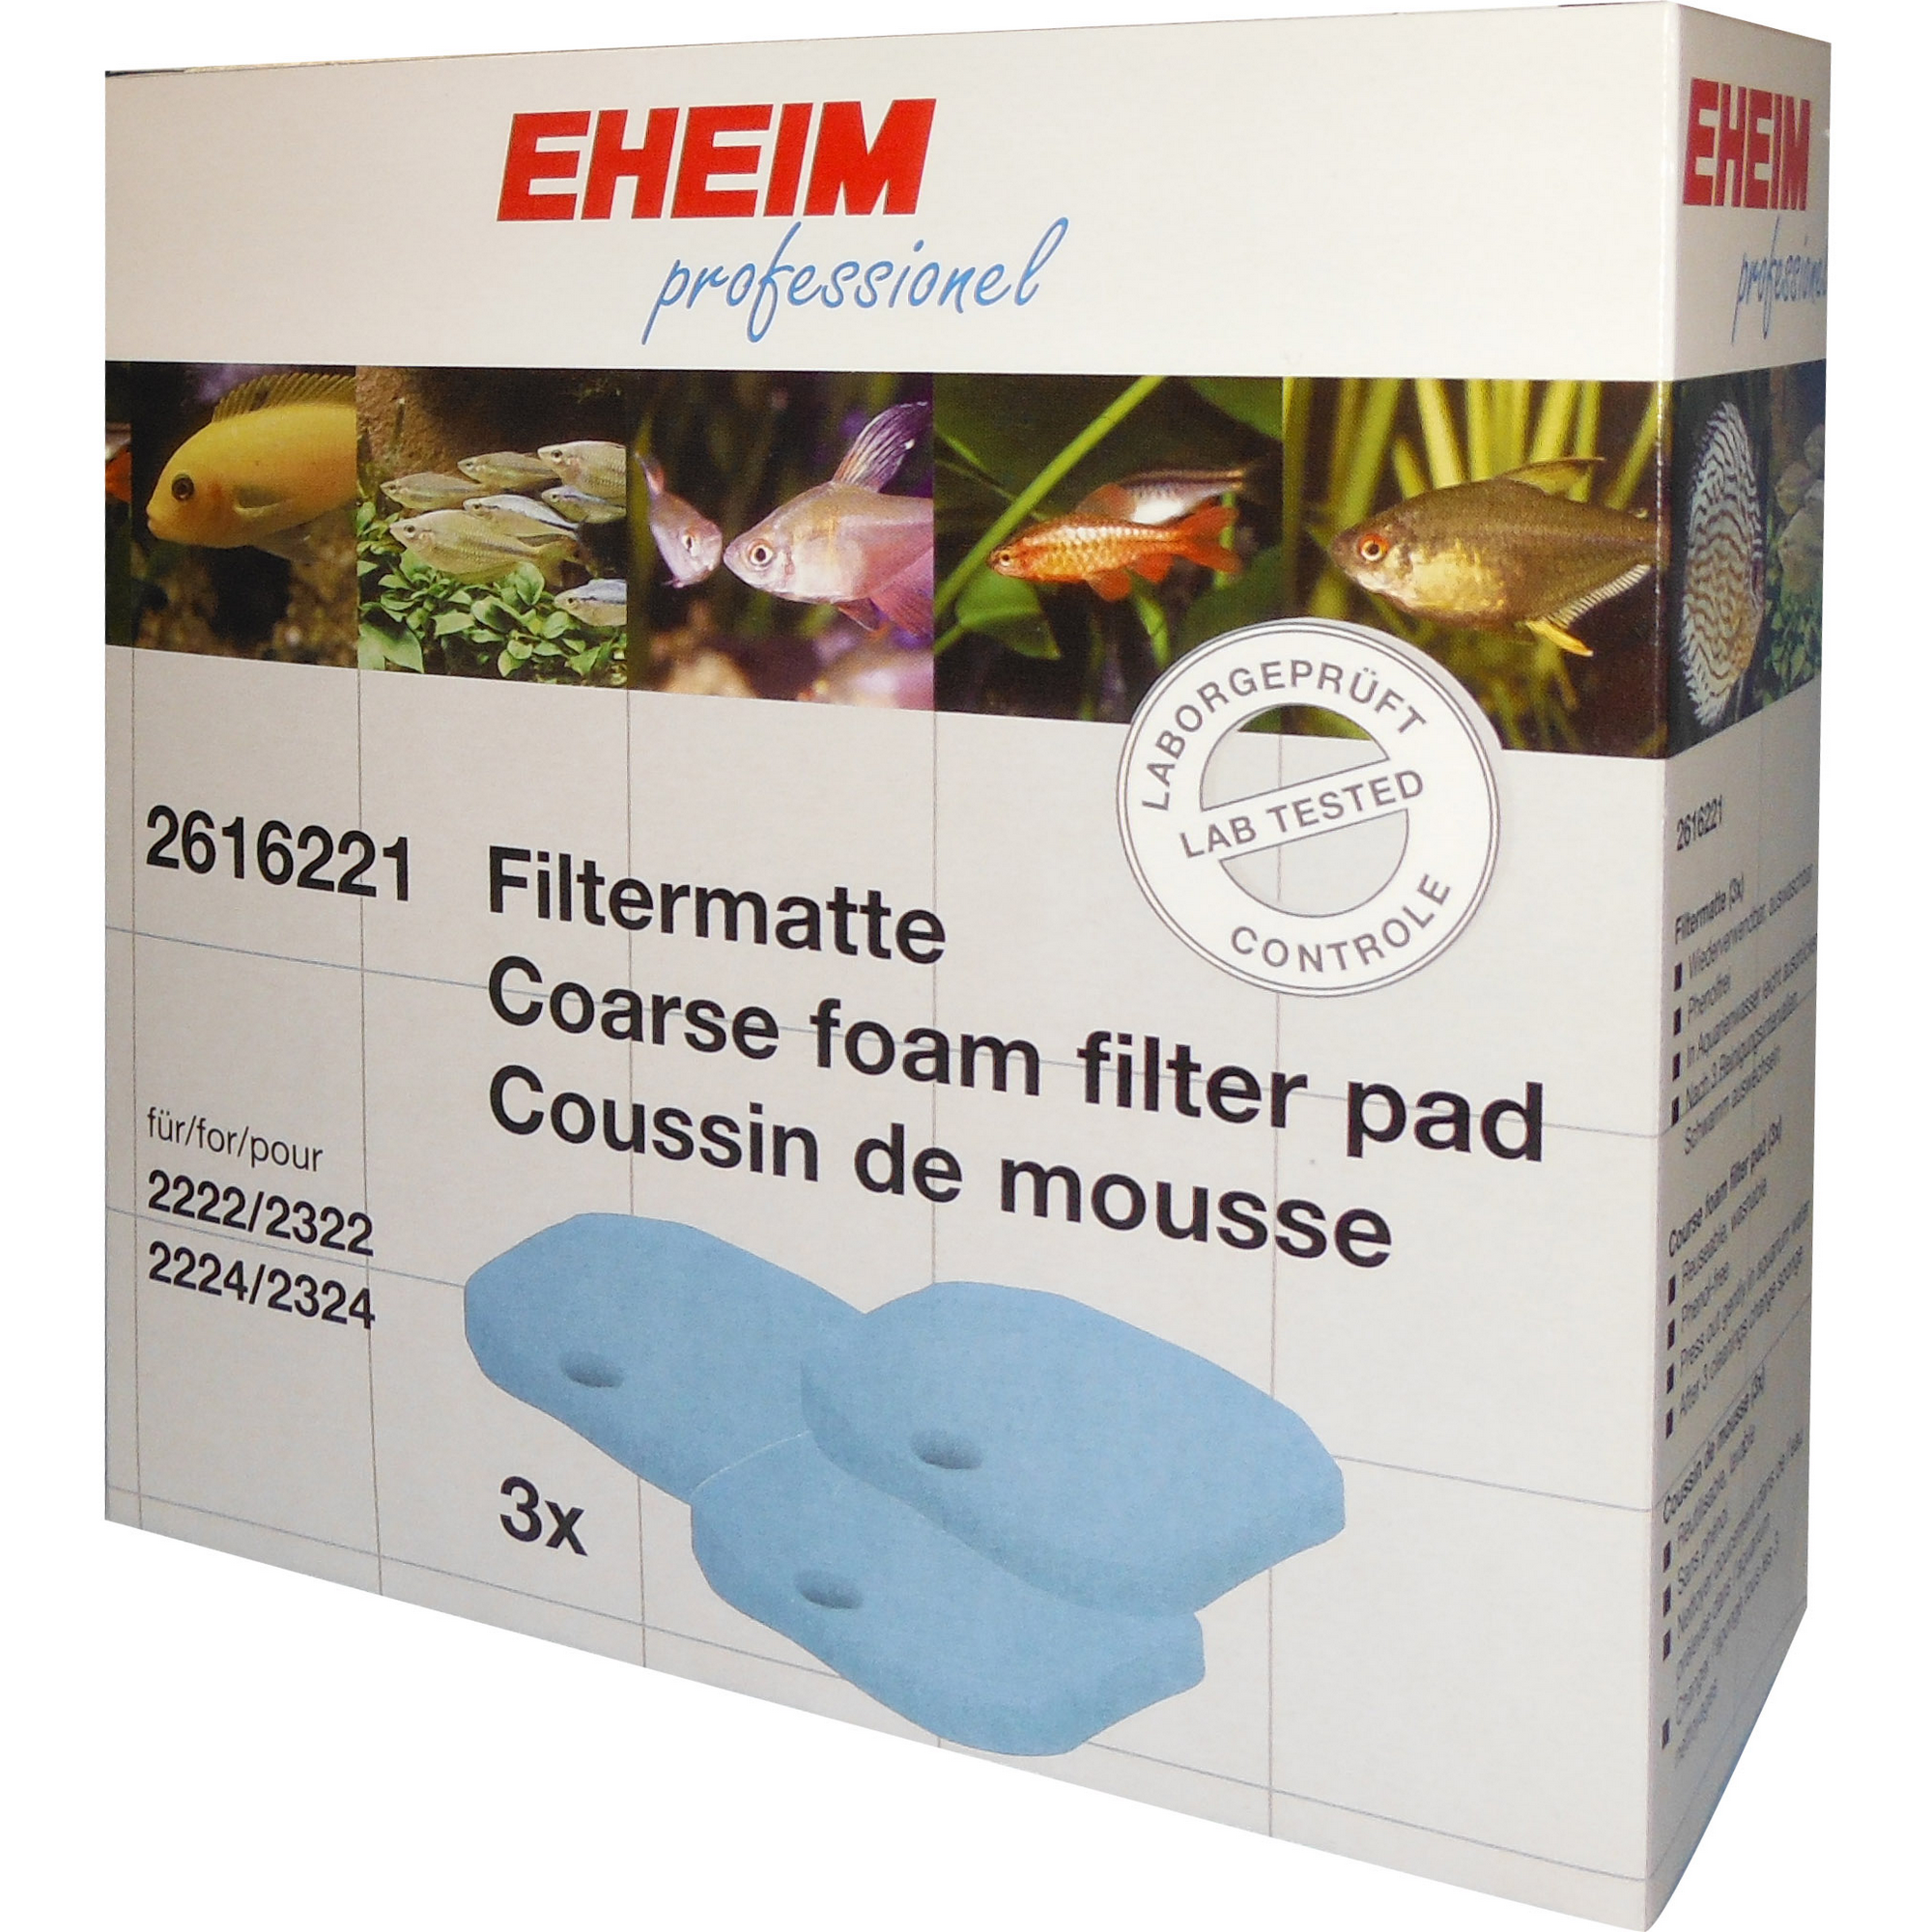 EHEIM Filtermatten für 2222-2224 + product picture